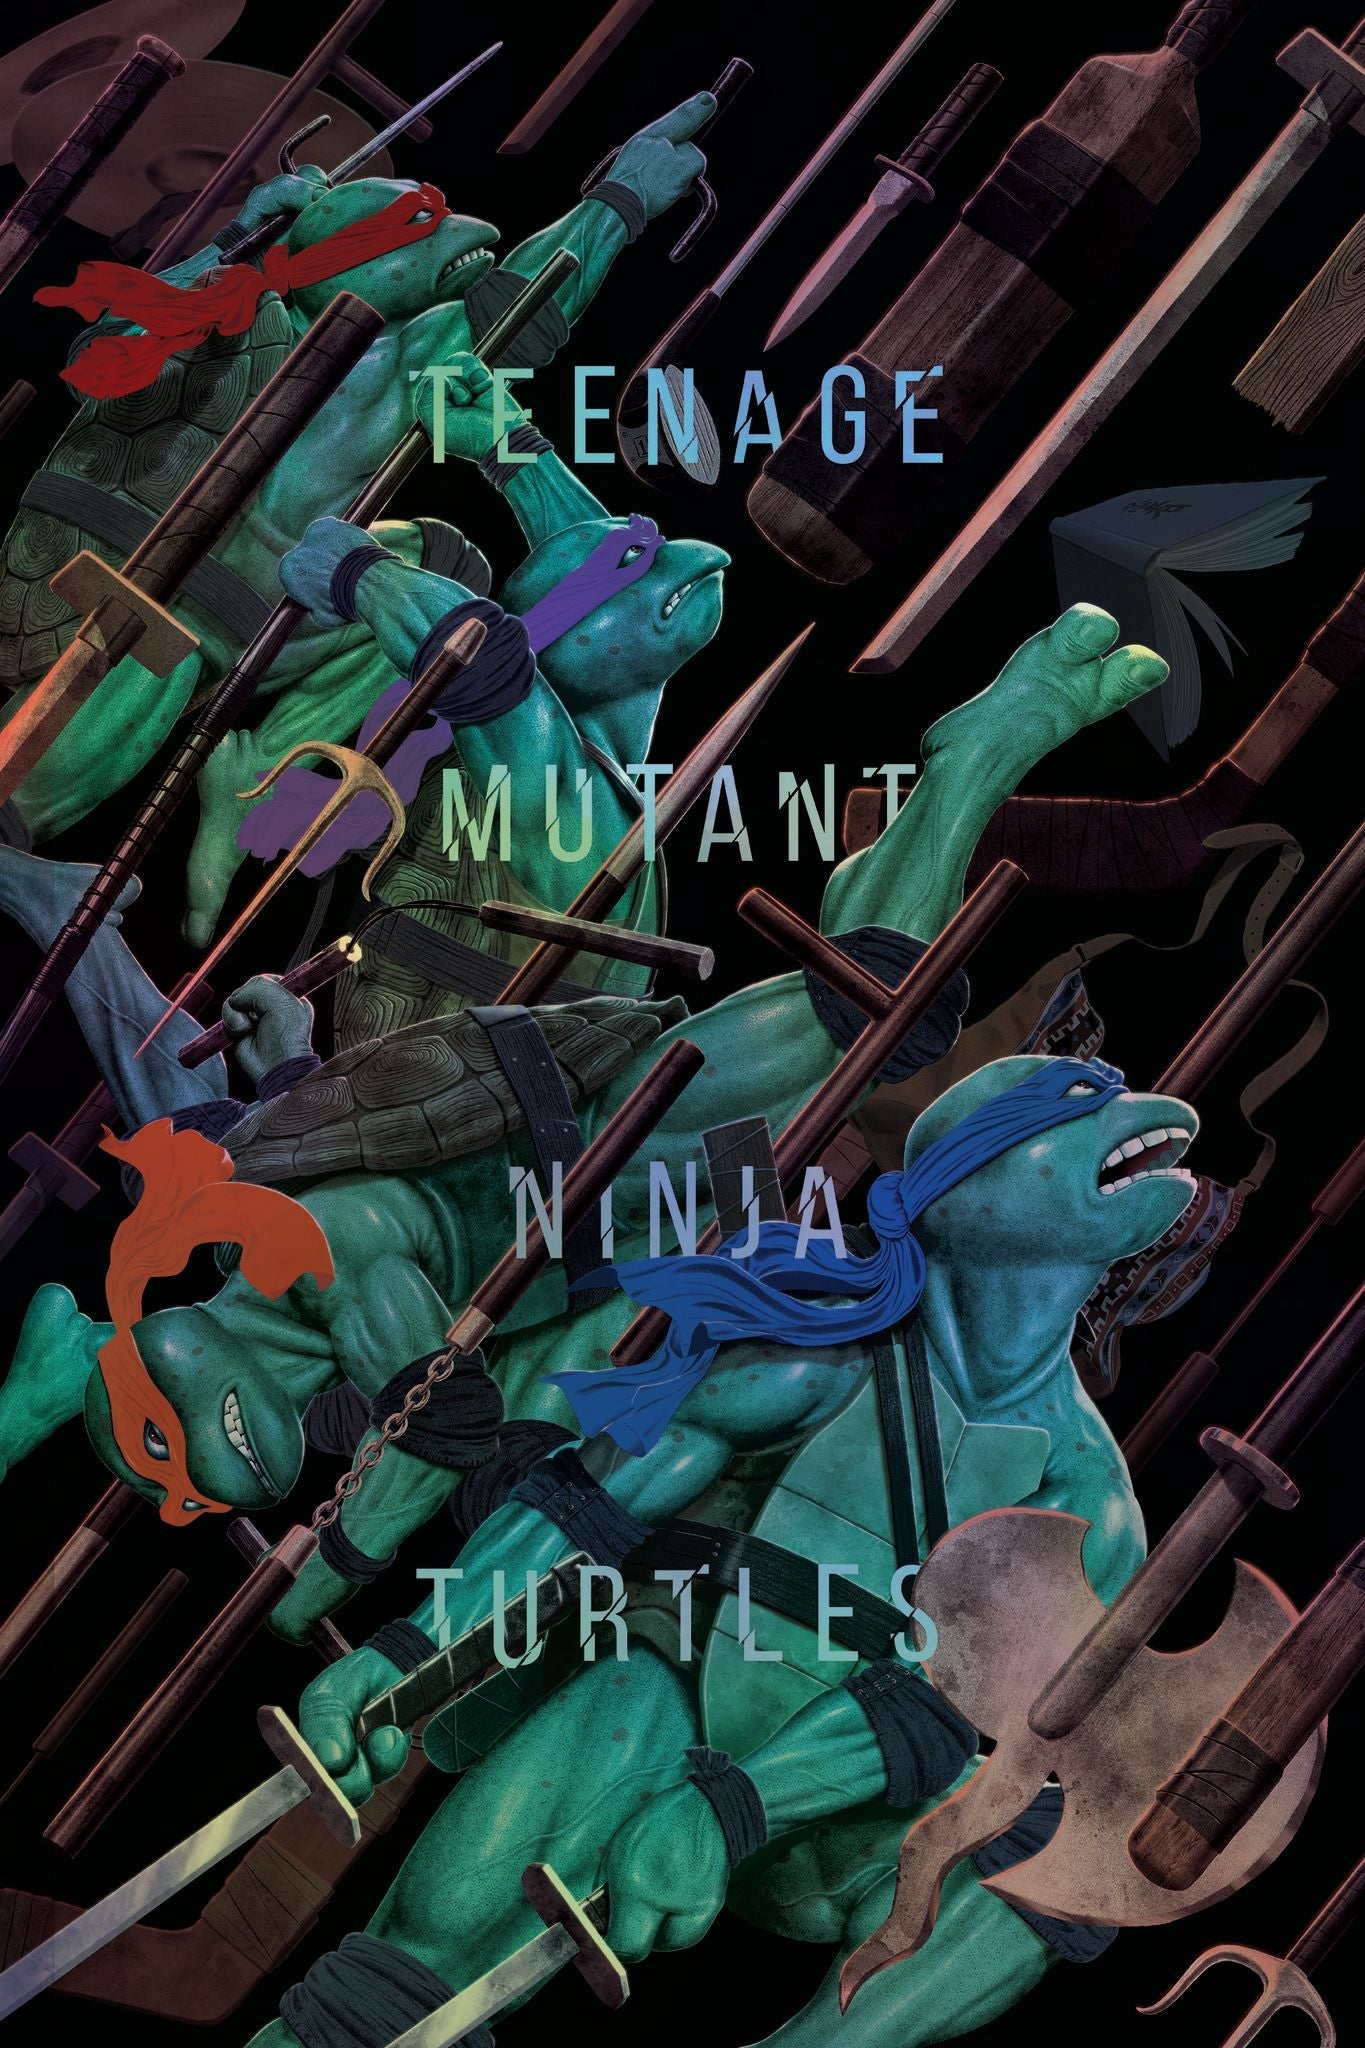 Jason Raish "Teenage Mutant Ninja Turtles" Foil Variant AP